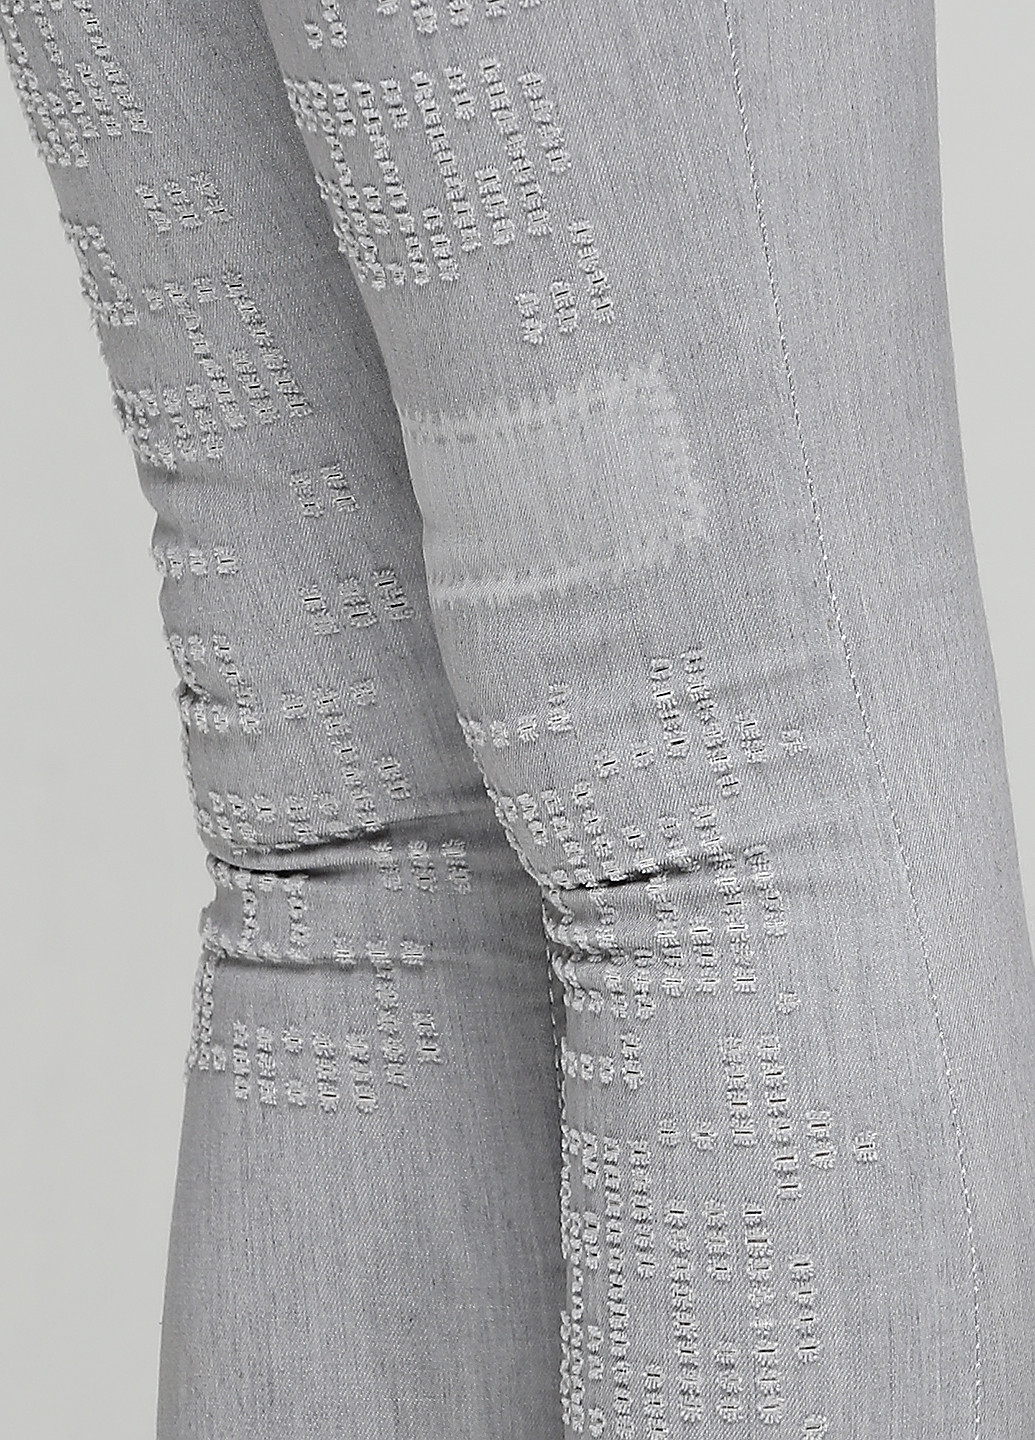 Серые демисезонные скинни джинсы MRS